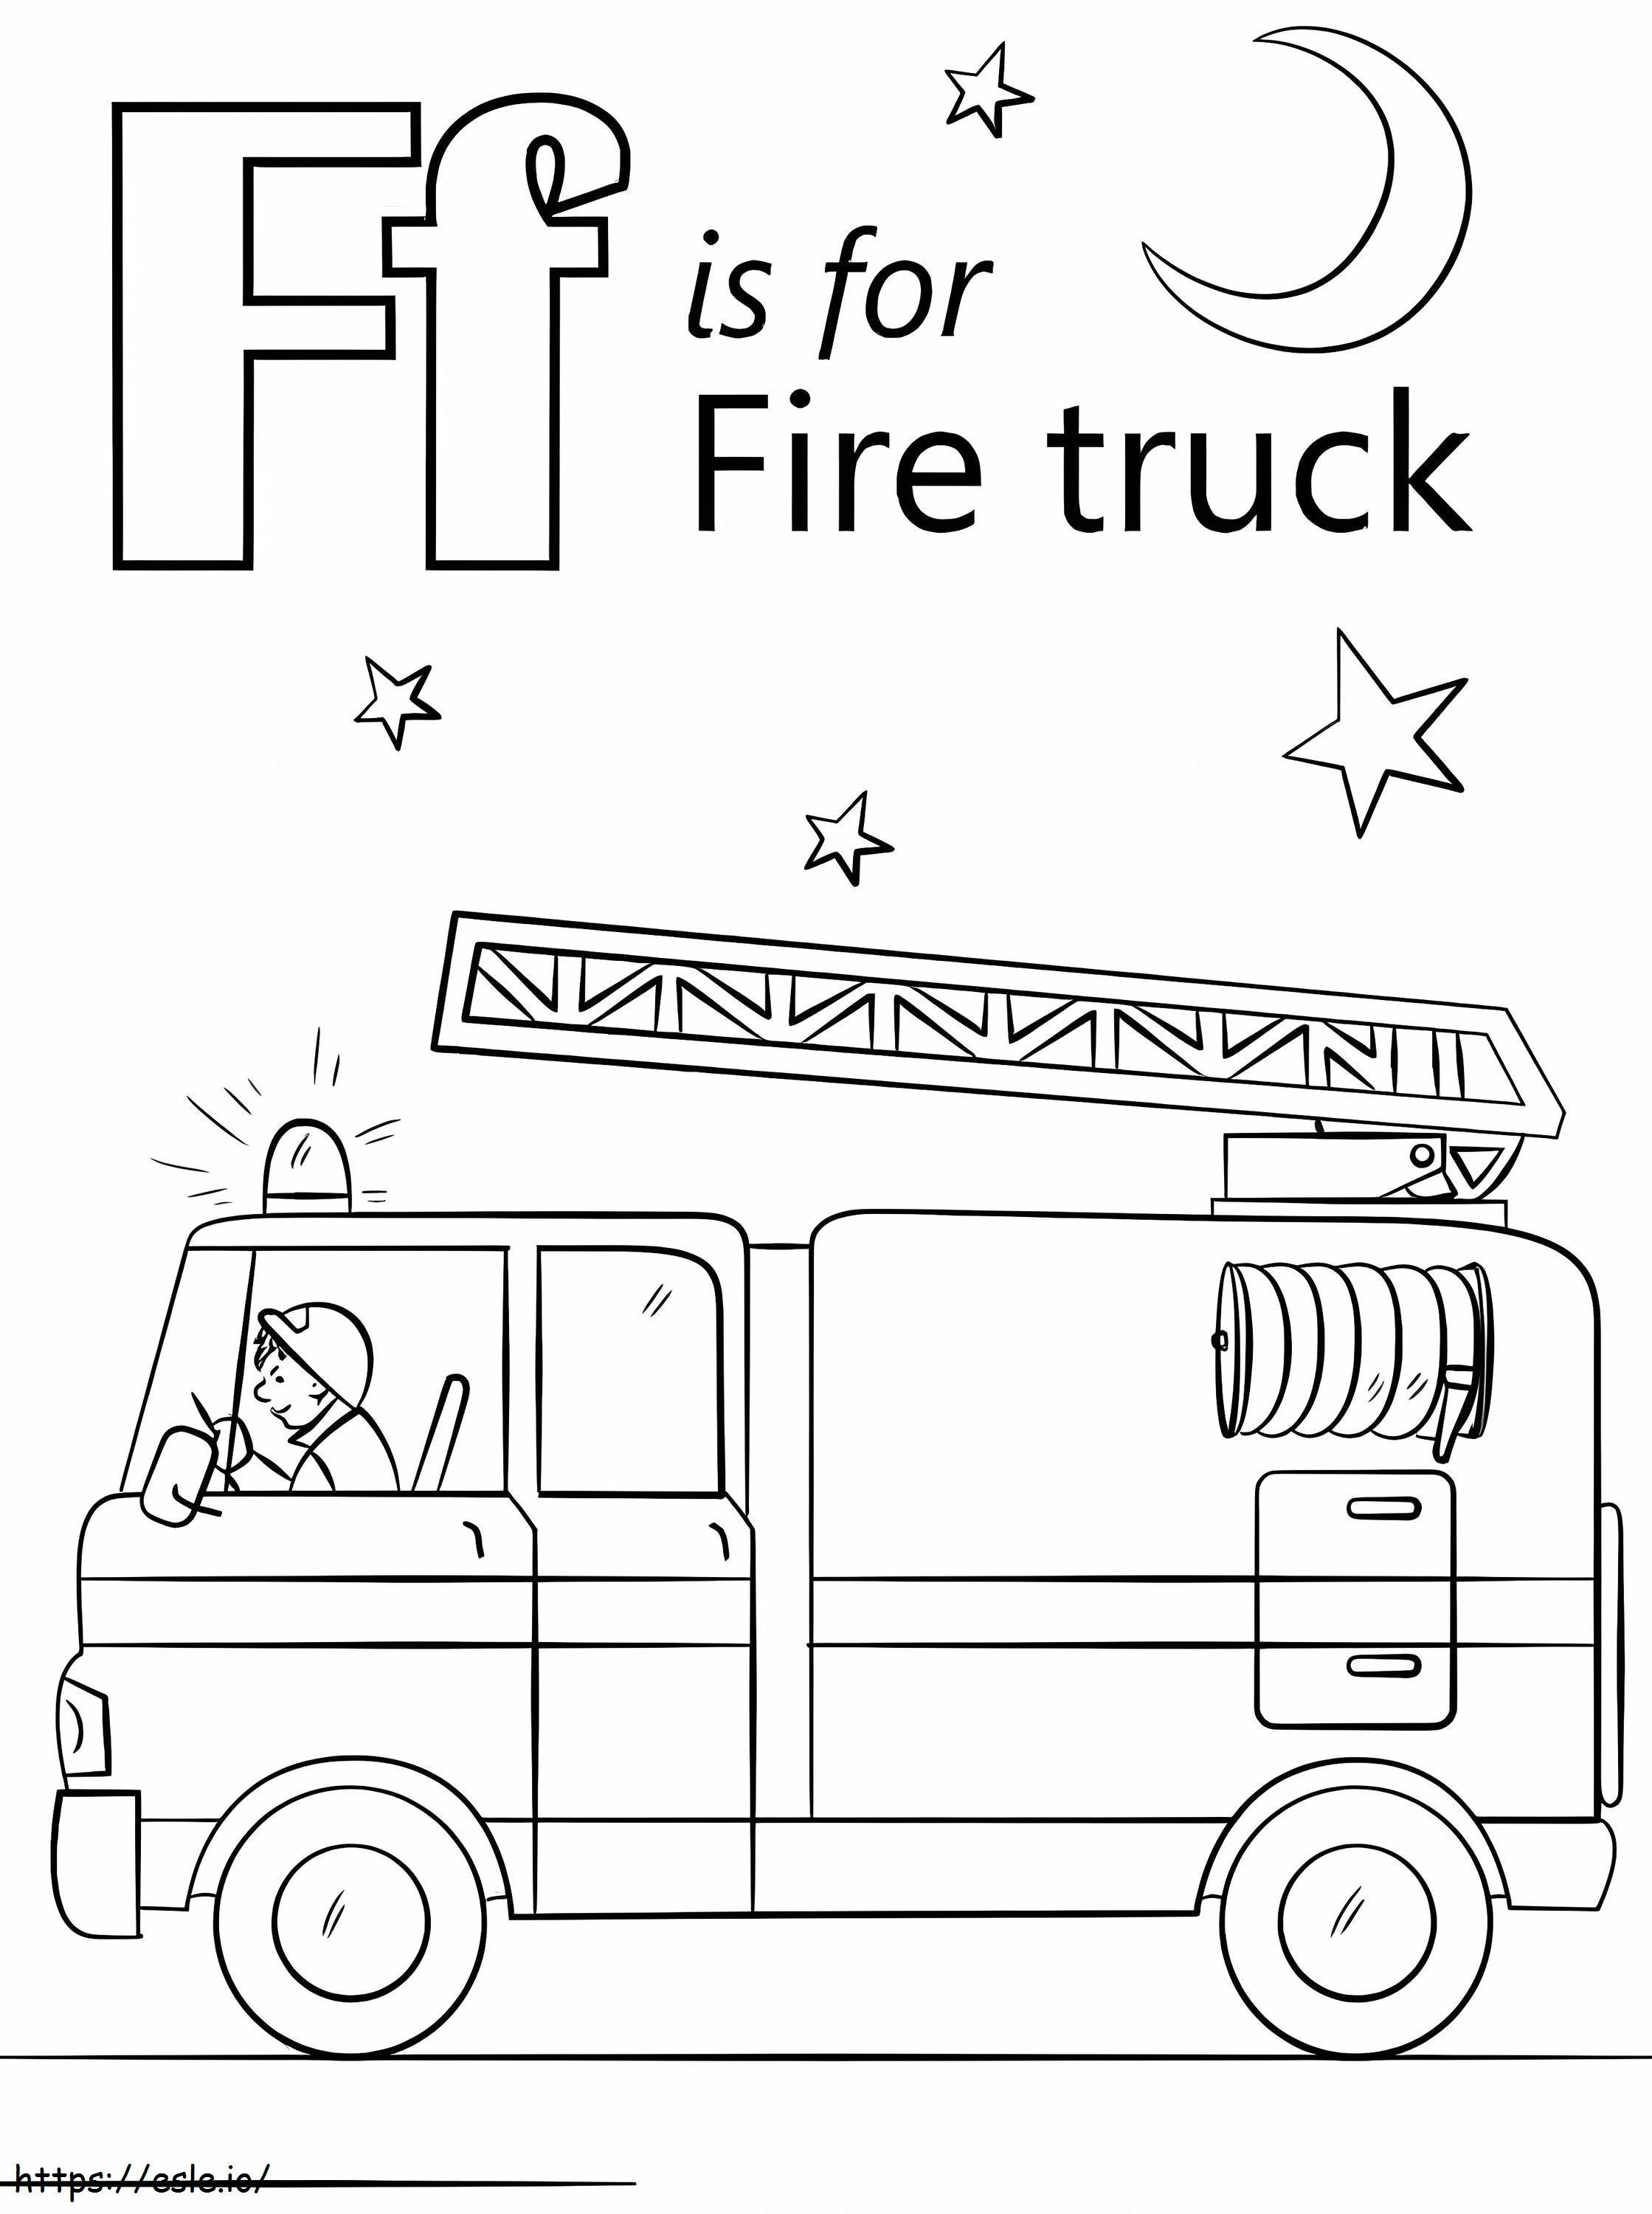 Lettera F del camion dei pompieri da colorare